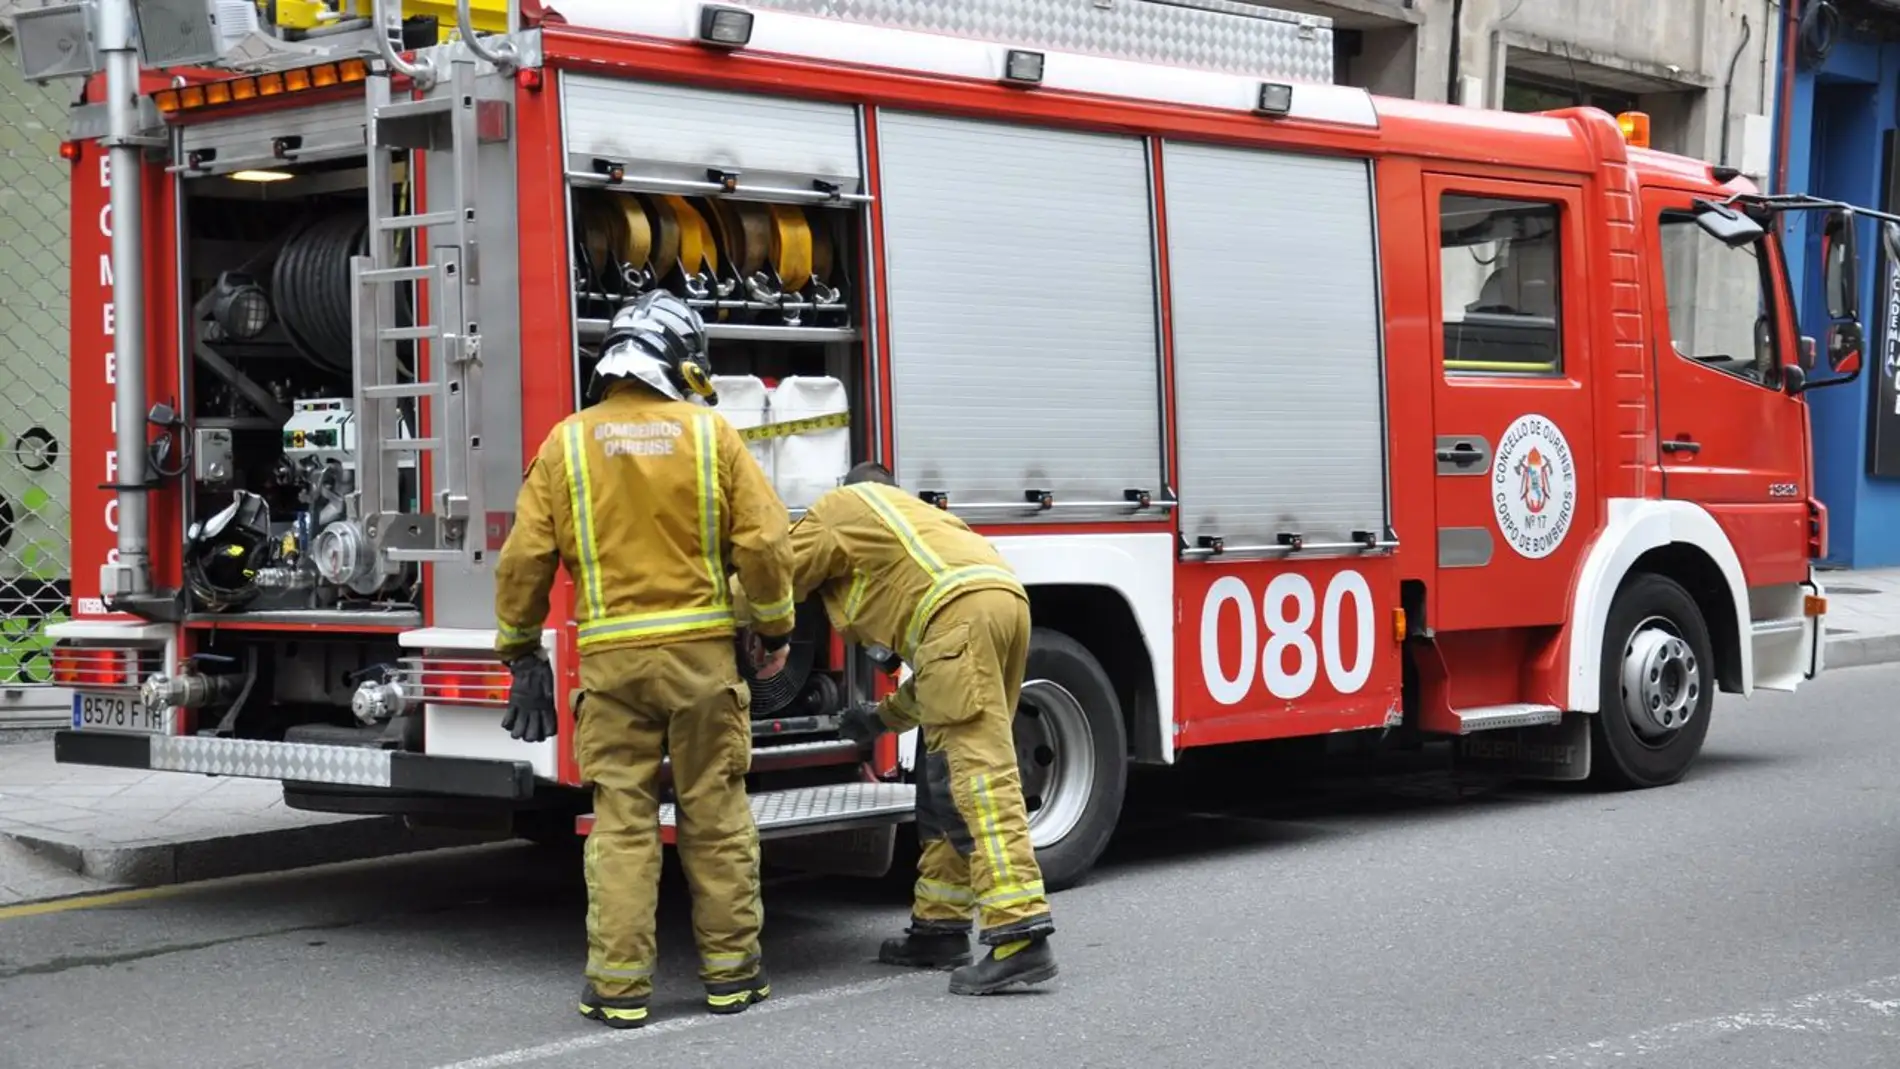 Os bombeiros realizaron 1.062 intervencións durante o ano 2020